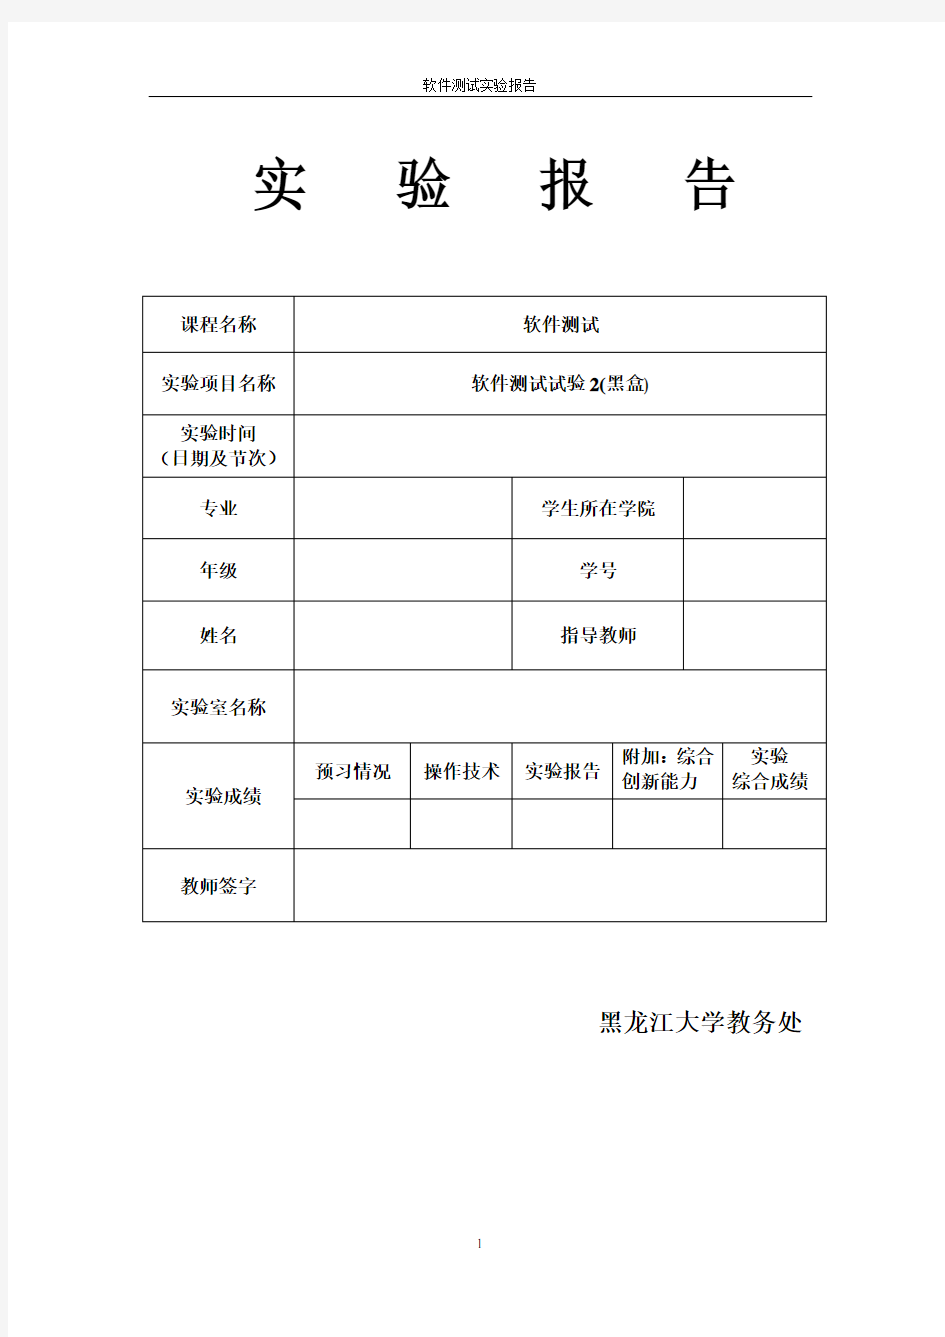 软件测试实验报告刘天元20104000